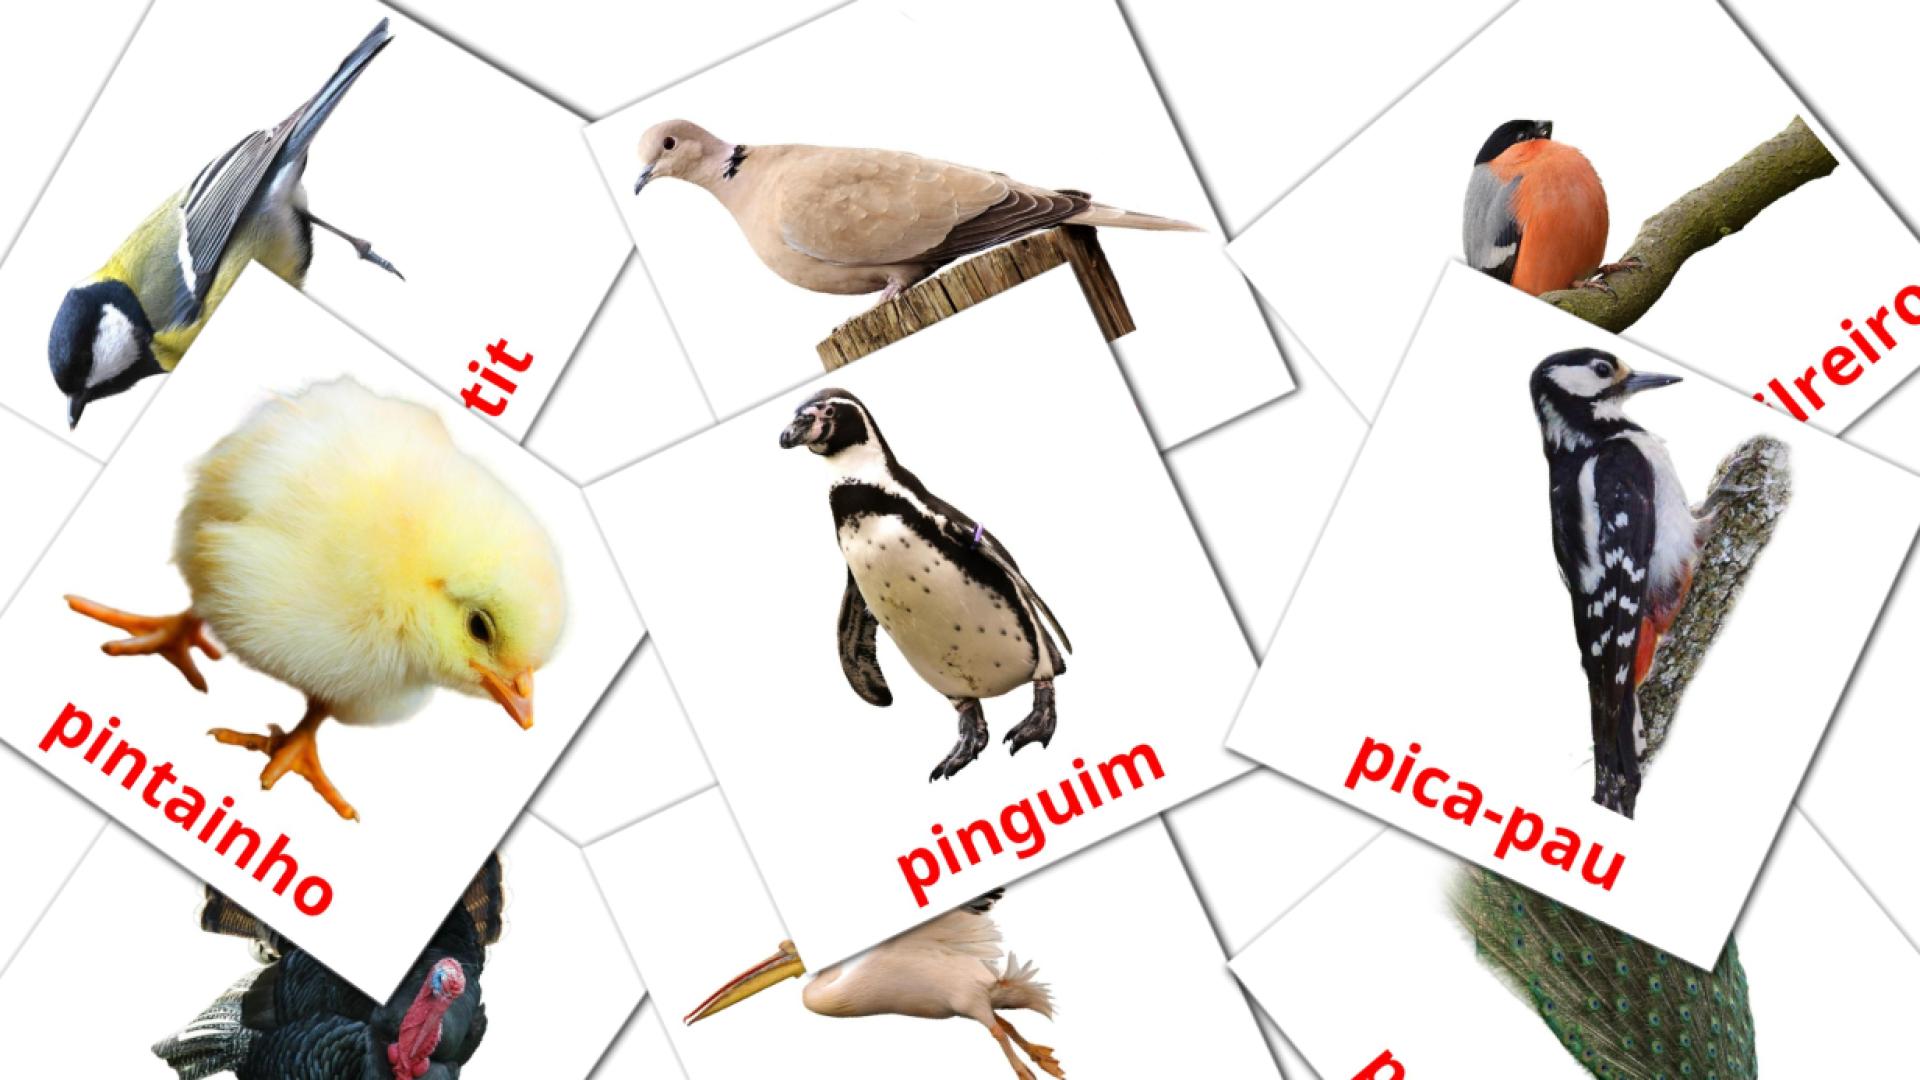 Fiches de vocabulaire portugaises sur Pássaros